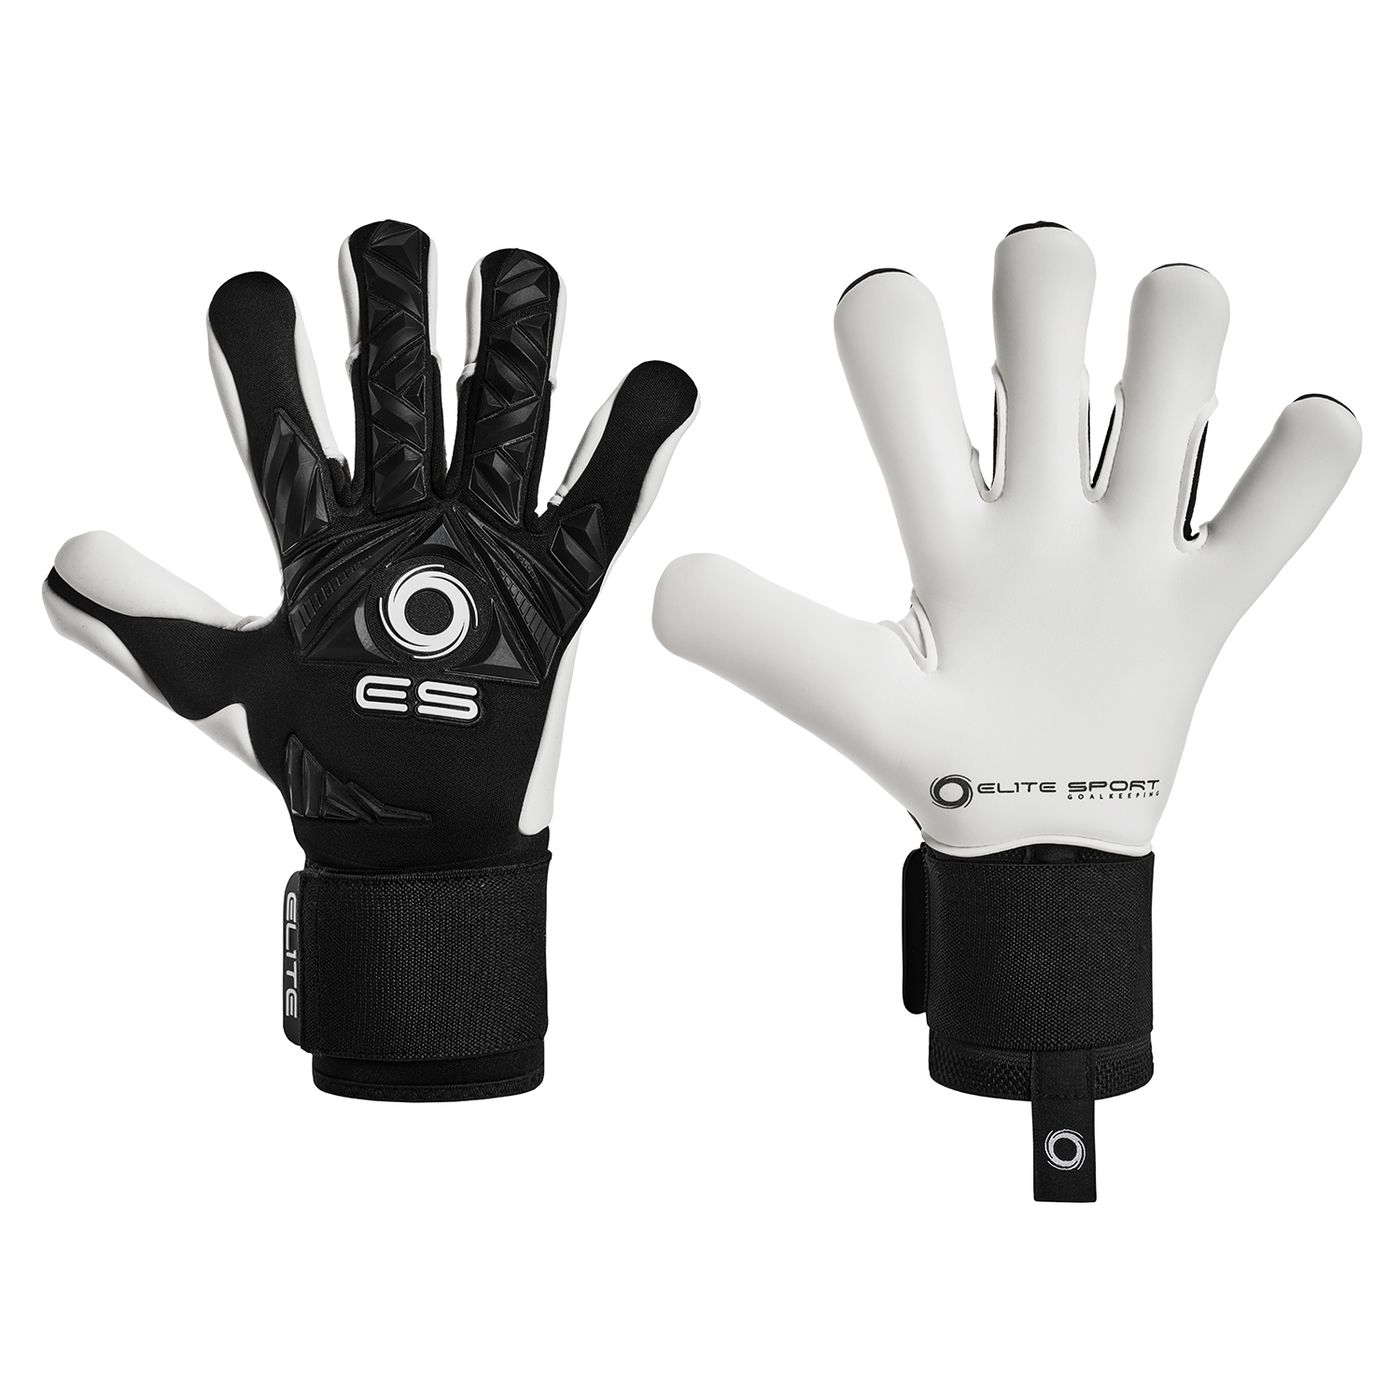 Вратарские перчатки Elite Sport REVOLUTION II Combi BLACK купить